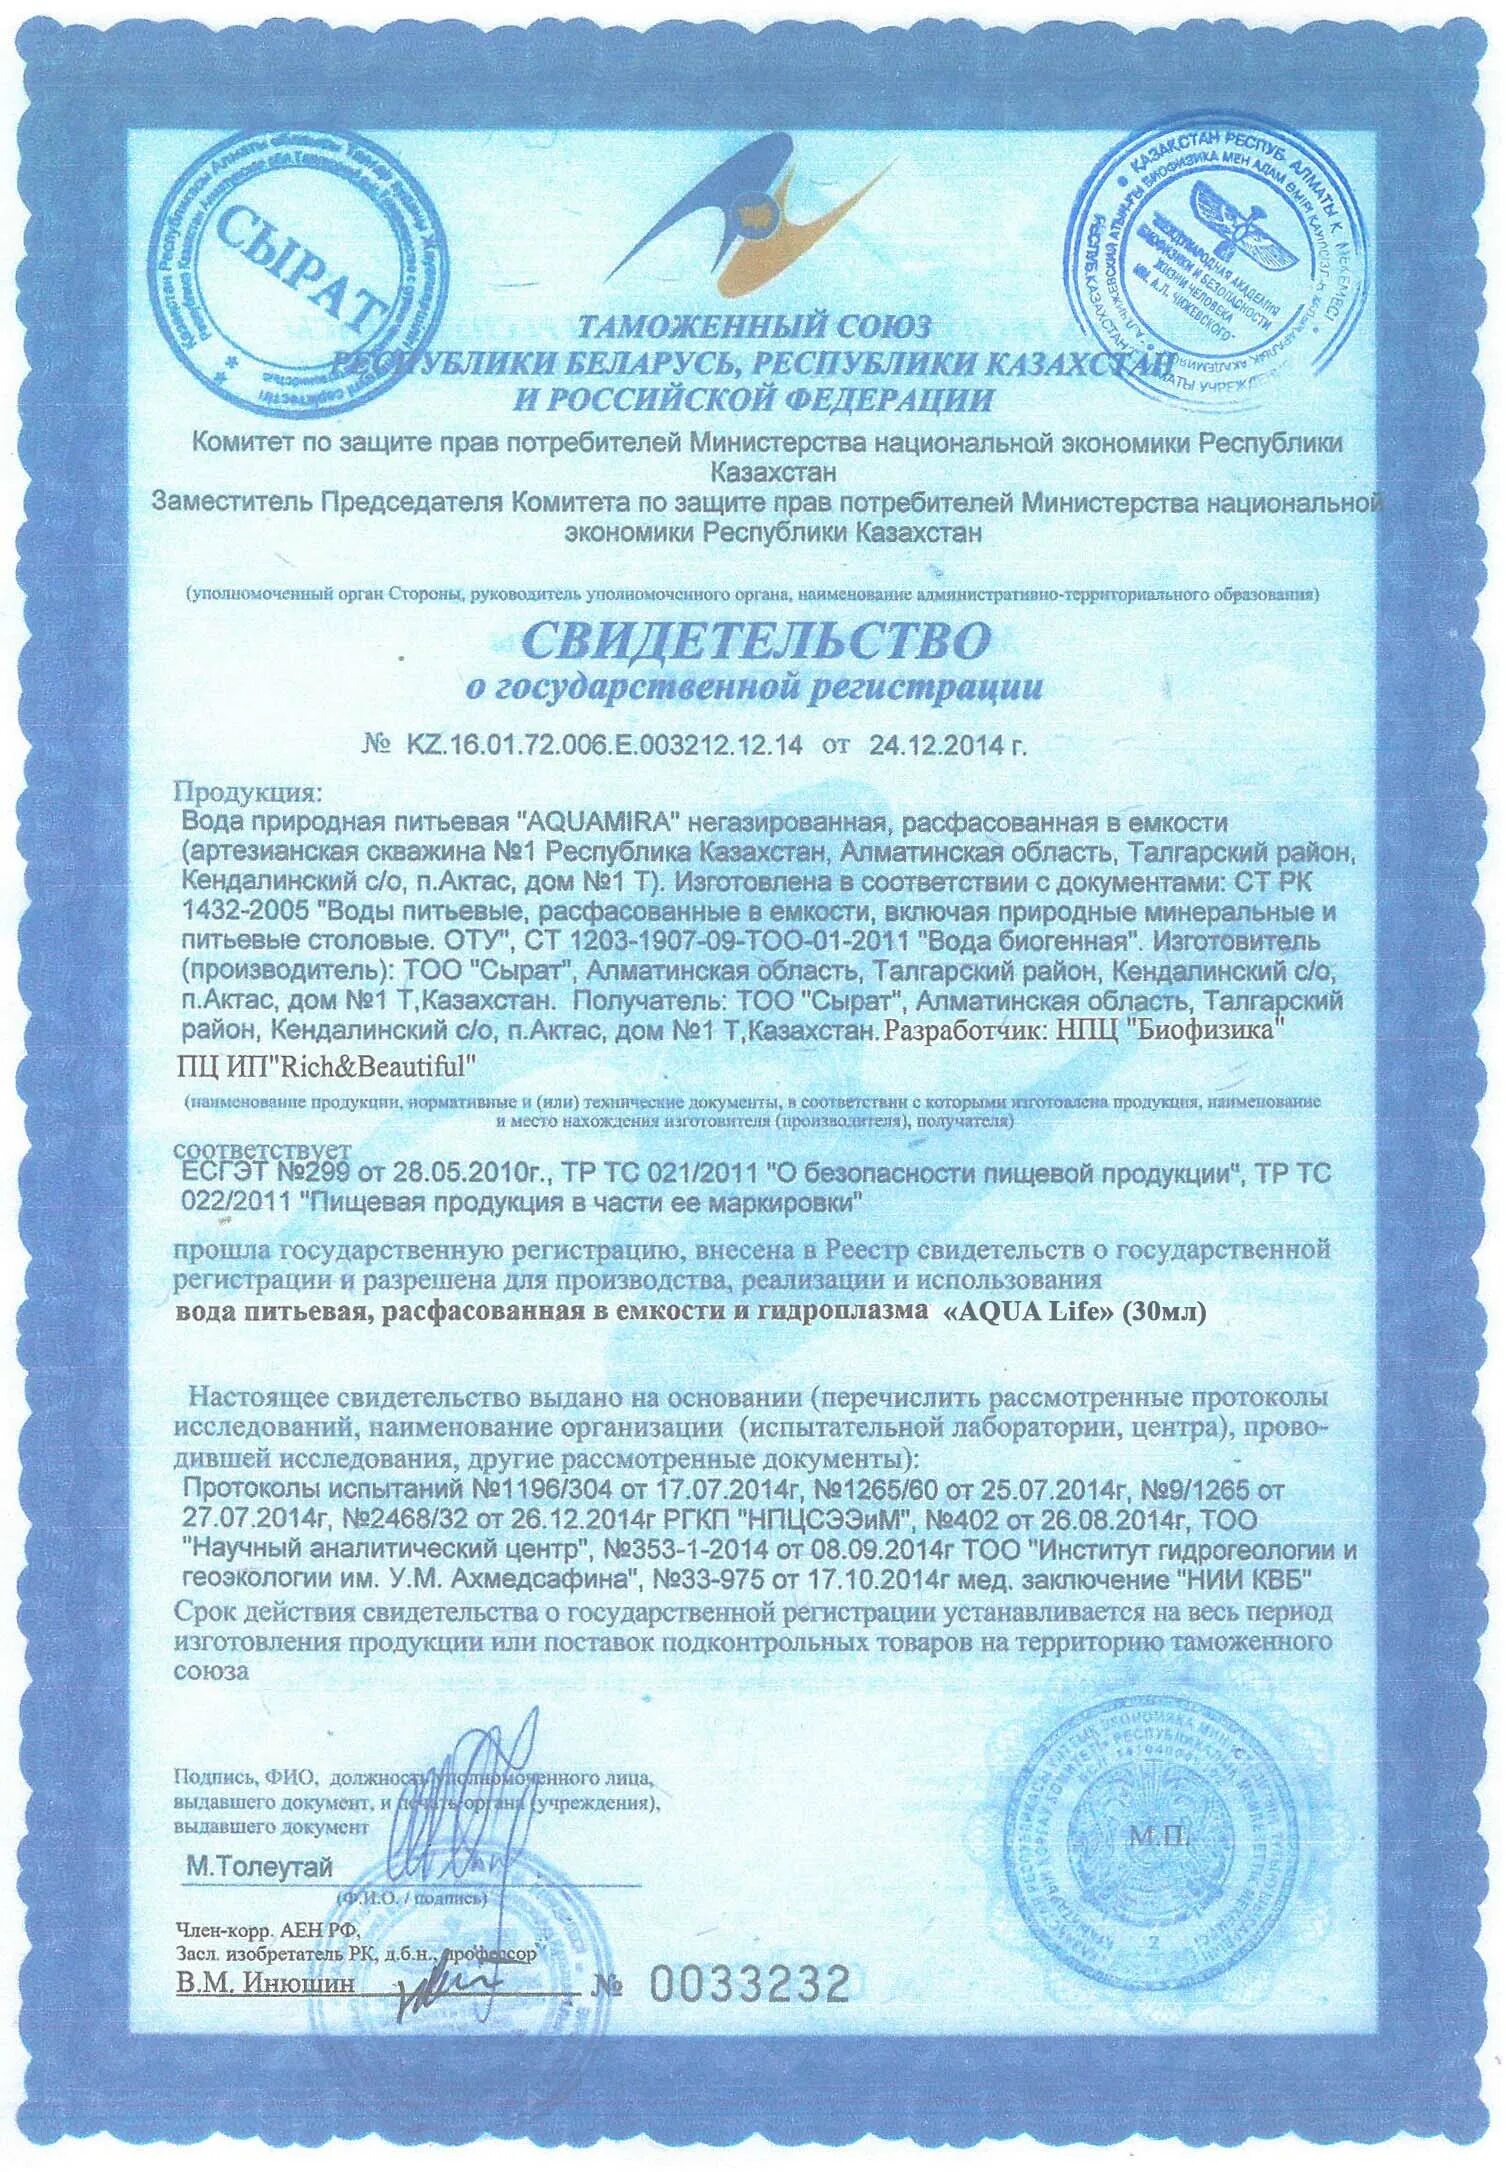 Сертификат Рич. Конфеты Пробиомилк арт лайф. Rich сертификат соответствия. Сертификат Рич Евросоюз.